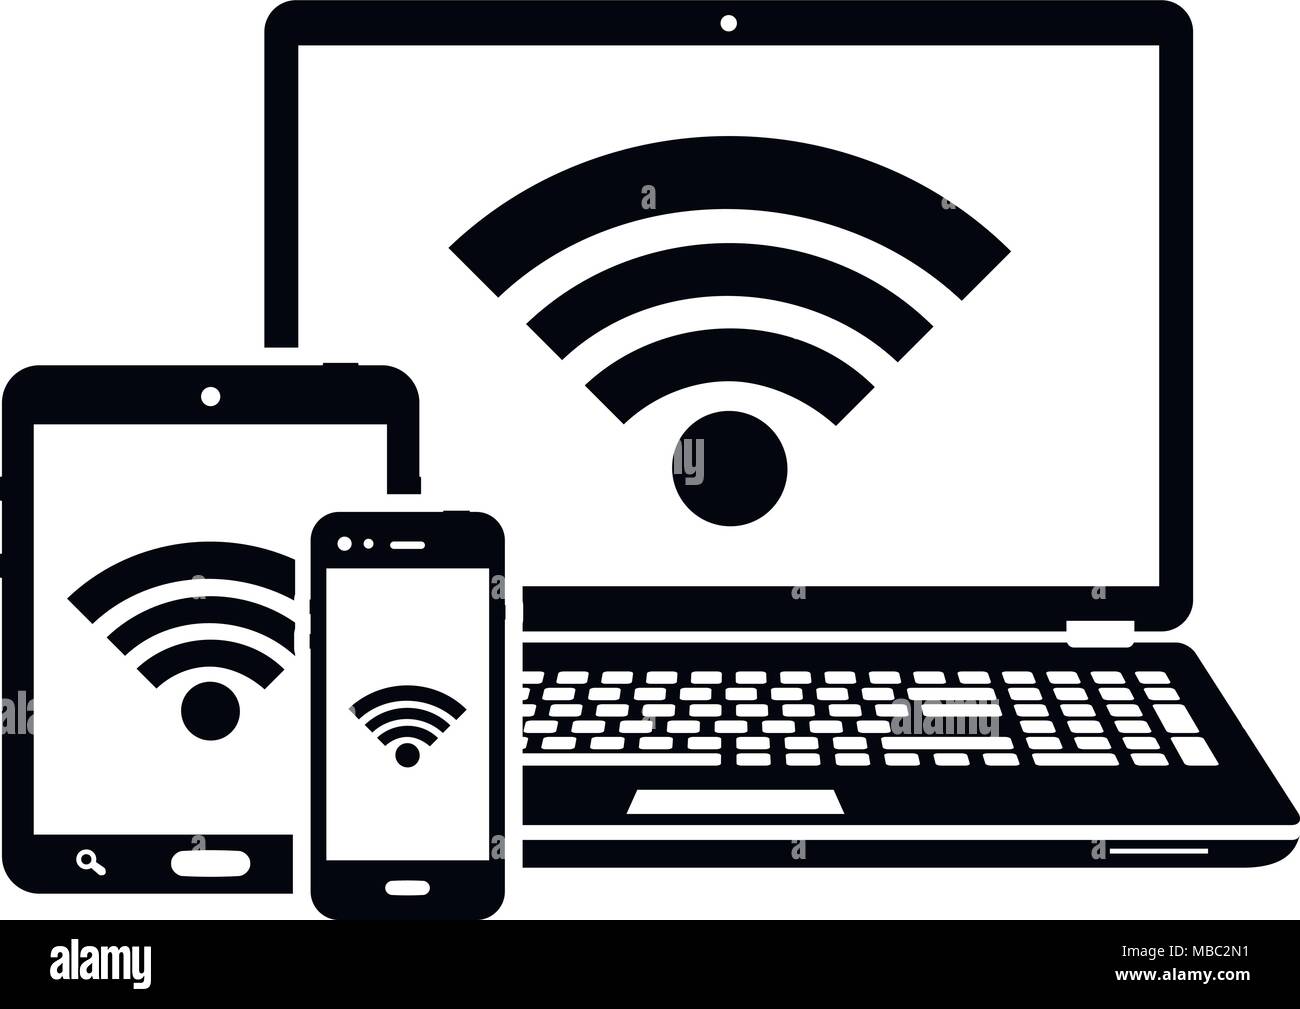 Wifi router laptop Banque d'images vectorielles - Alamy